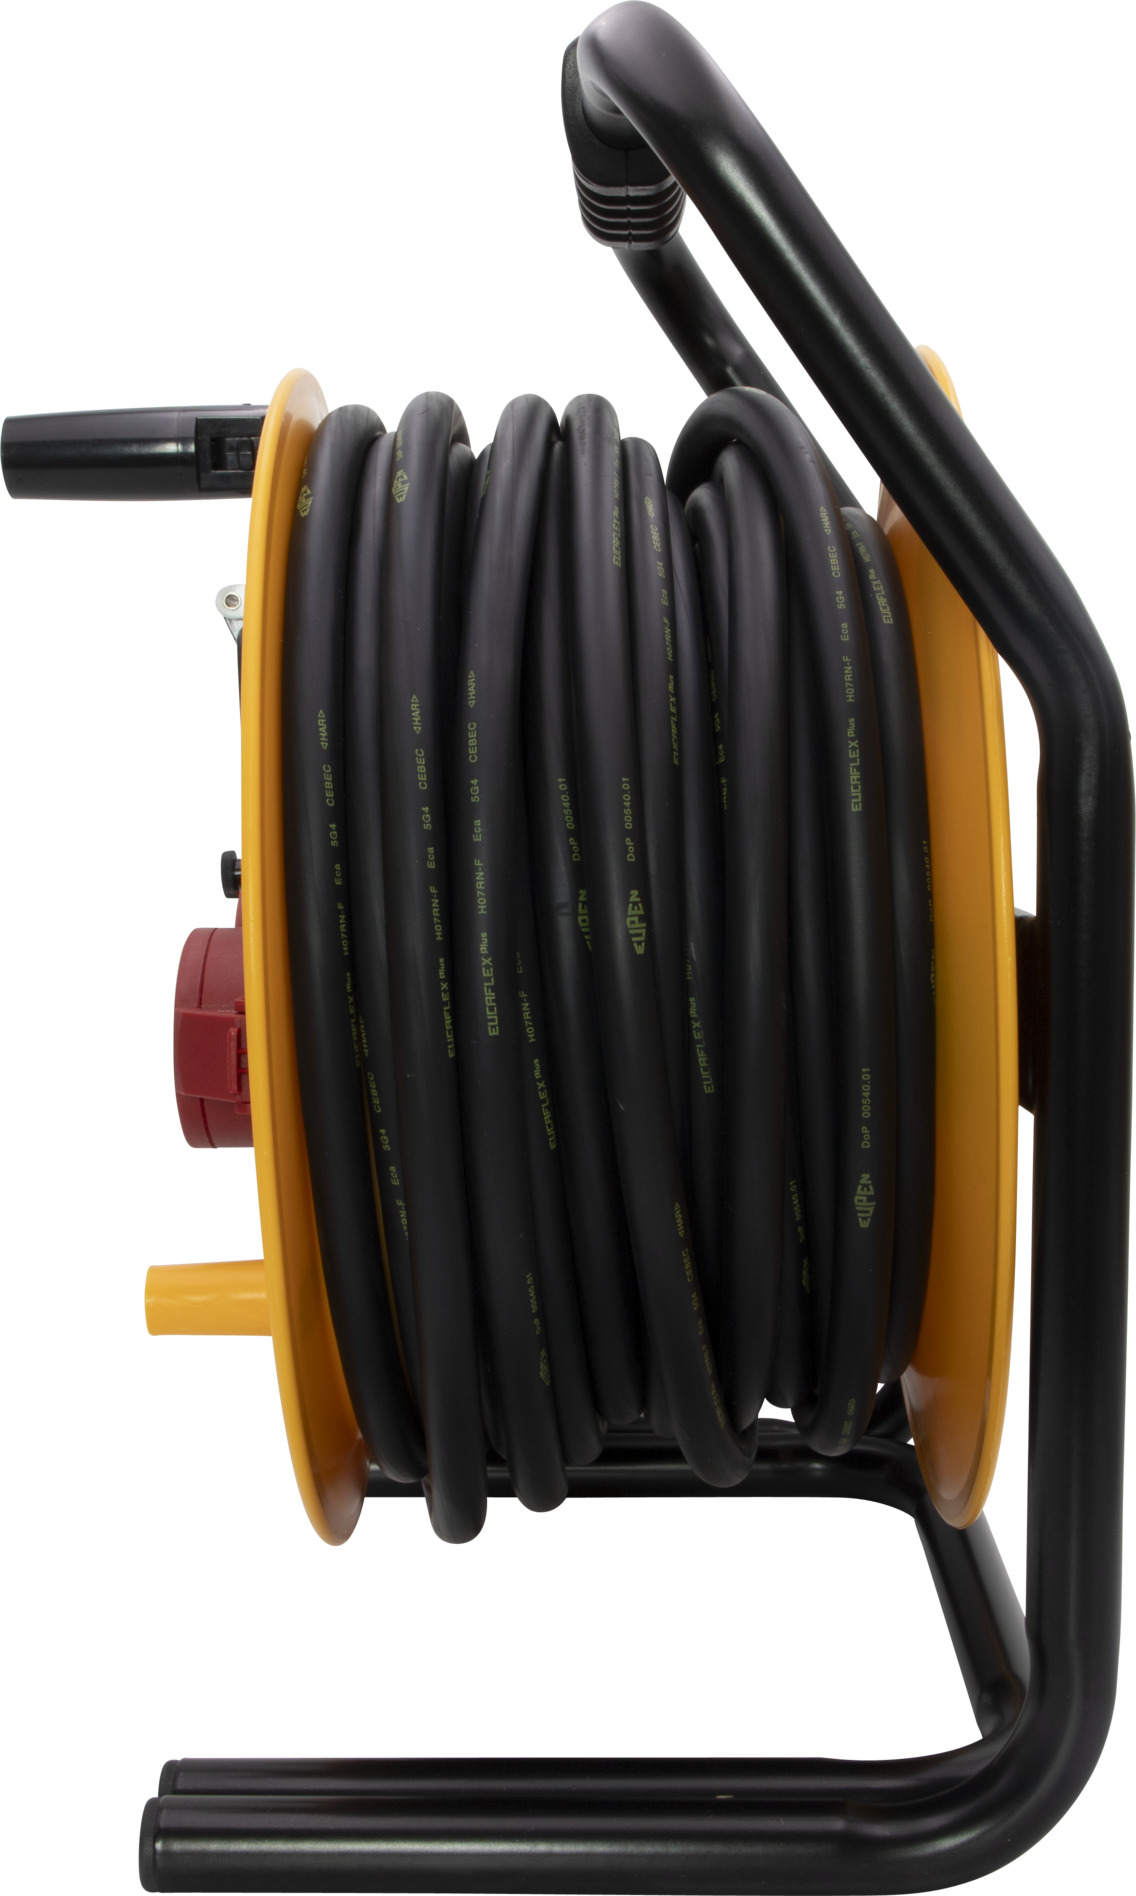 Cable souple avec cosse tubulaire sertie - 6mm2, 10mm2, 16mm2, 25mm2,  35mm2, 50mm2, 70mm2 - Équipement caravaning